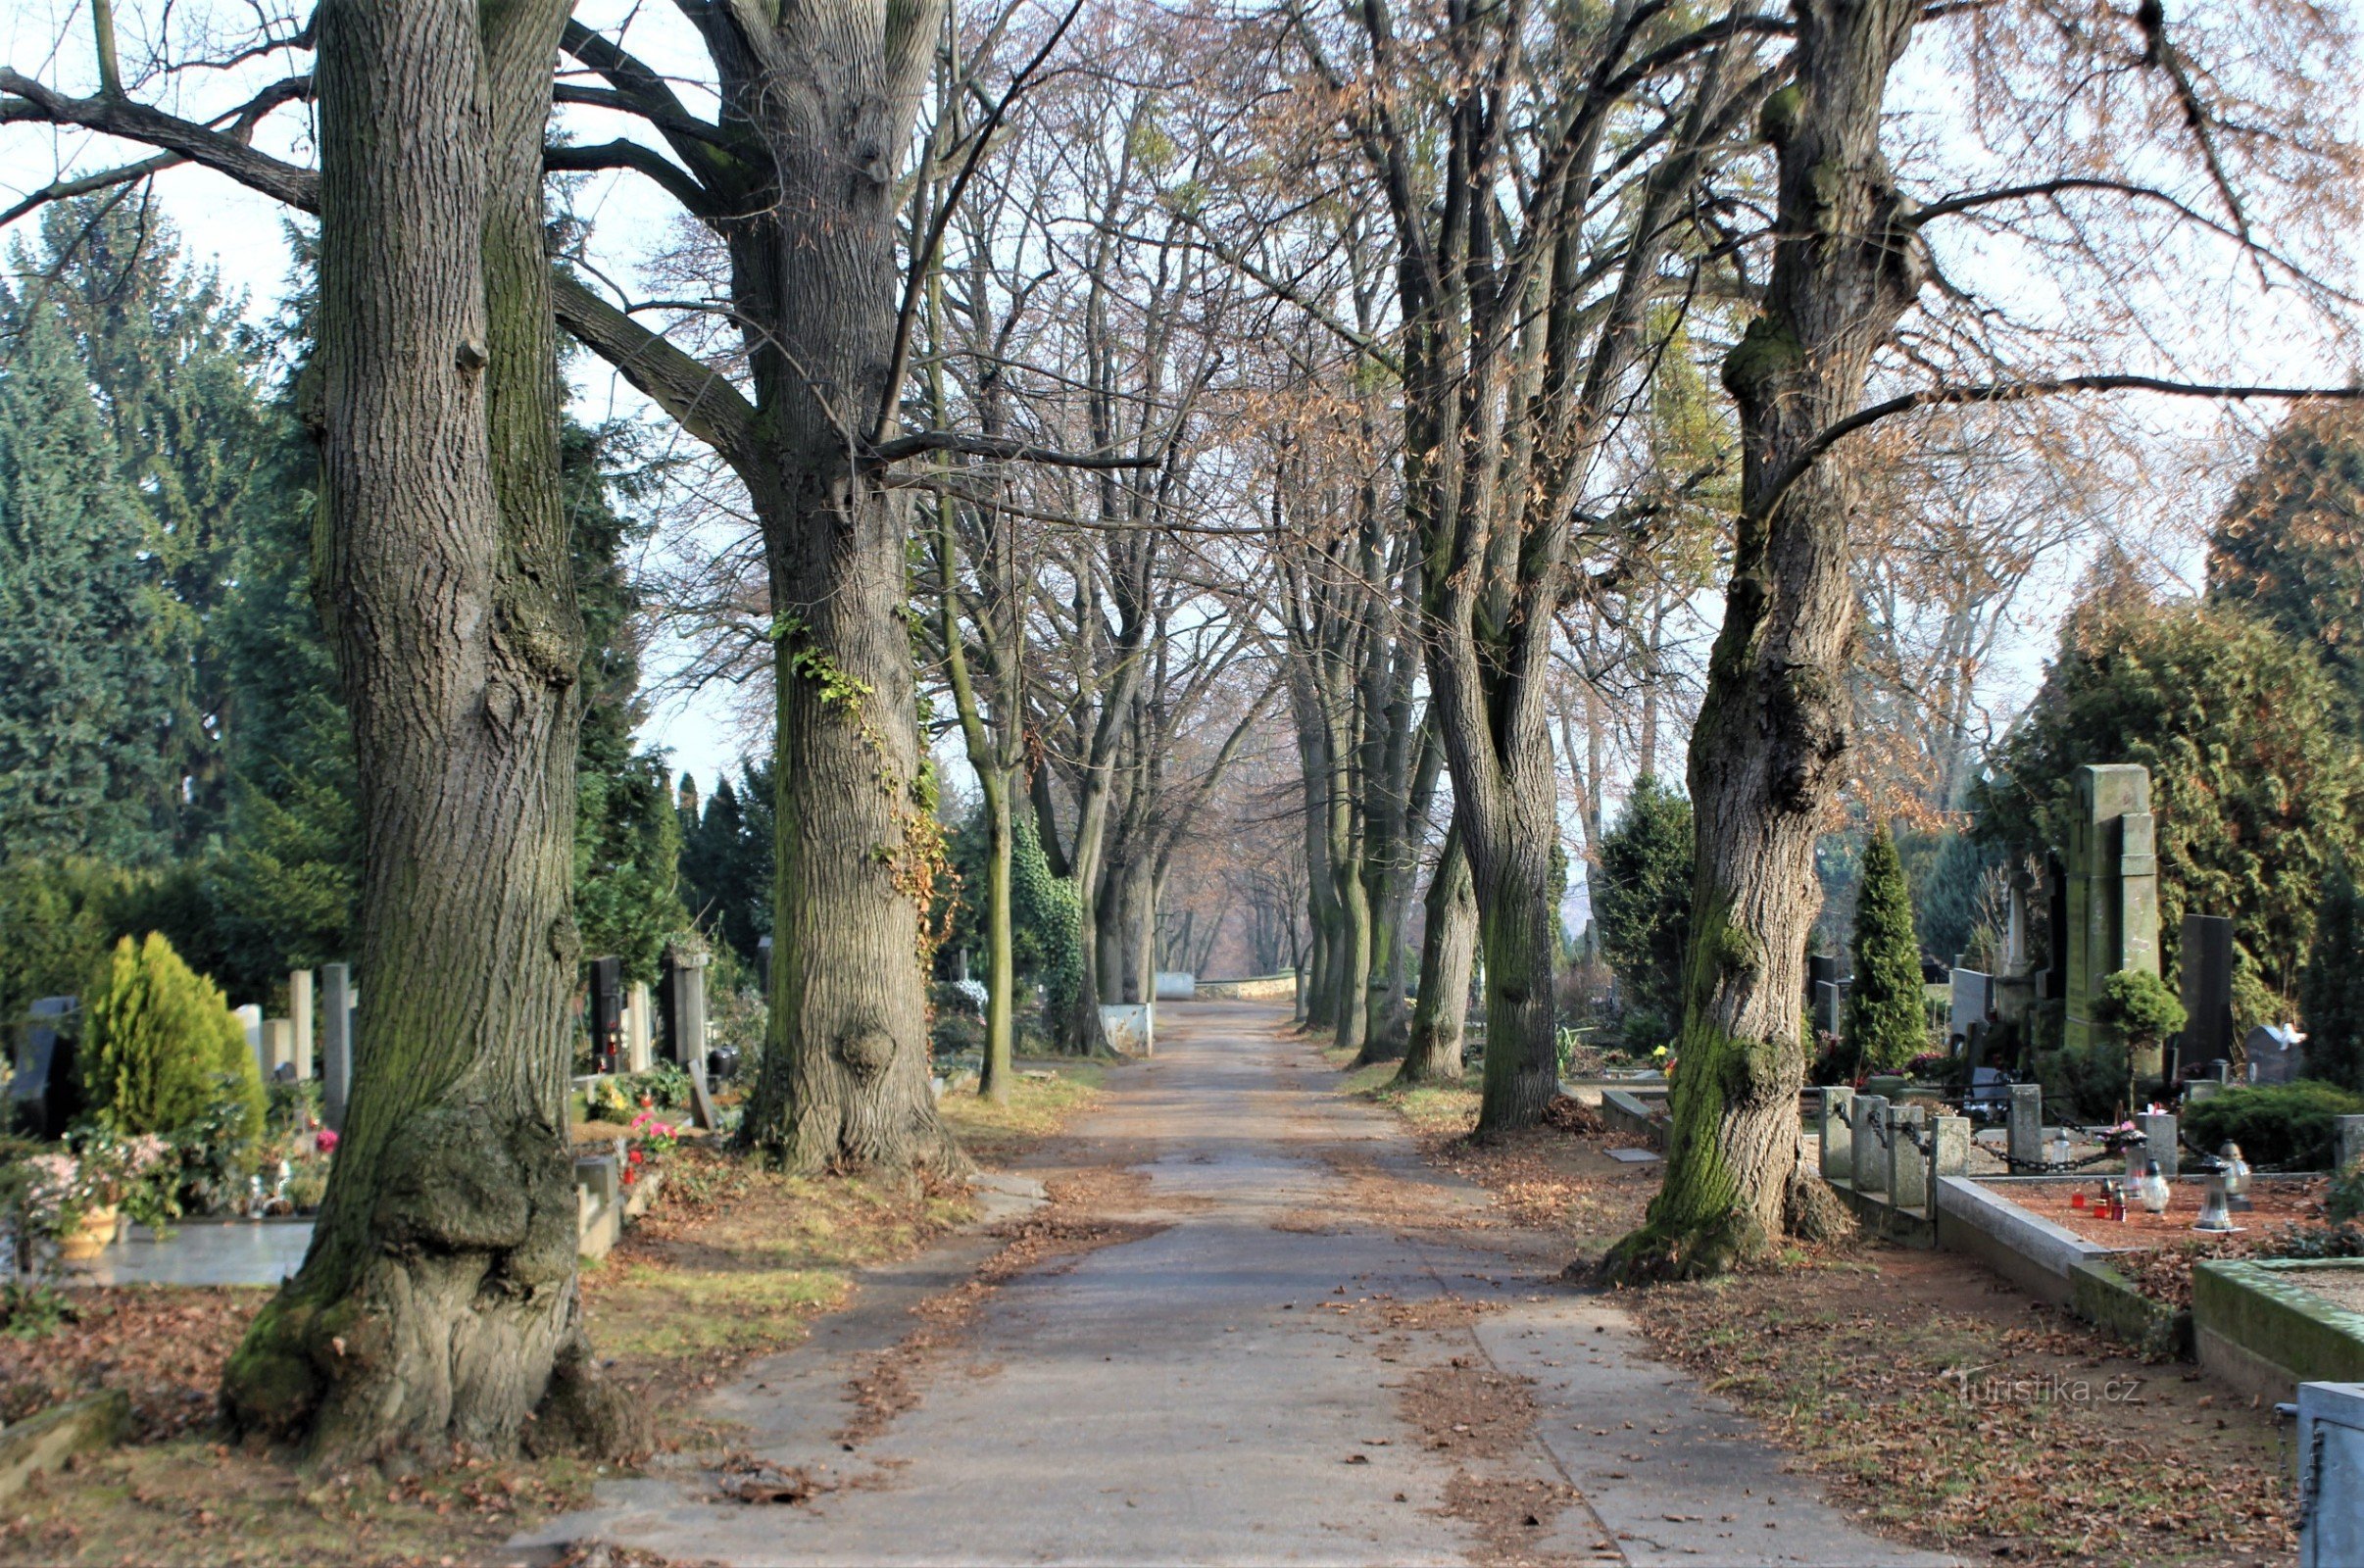 Cimitirul este împletit cu o rețea de străzi cu verdeață matură